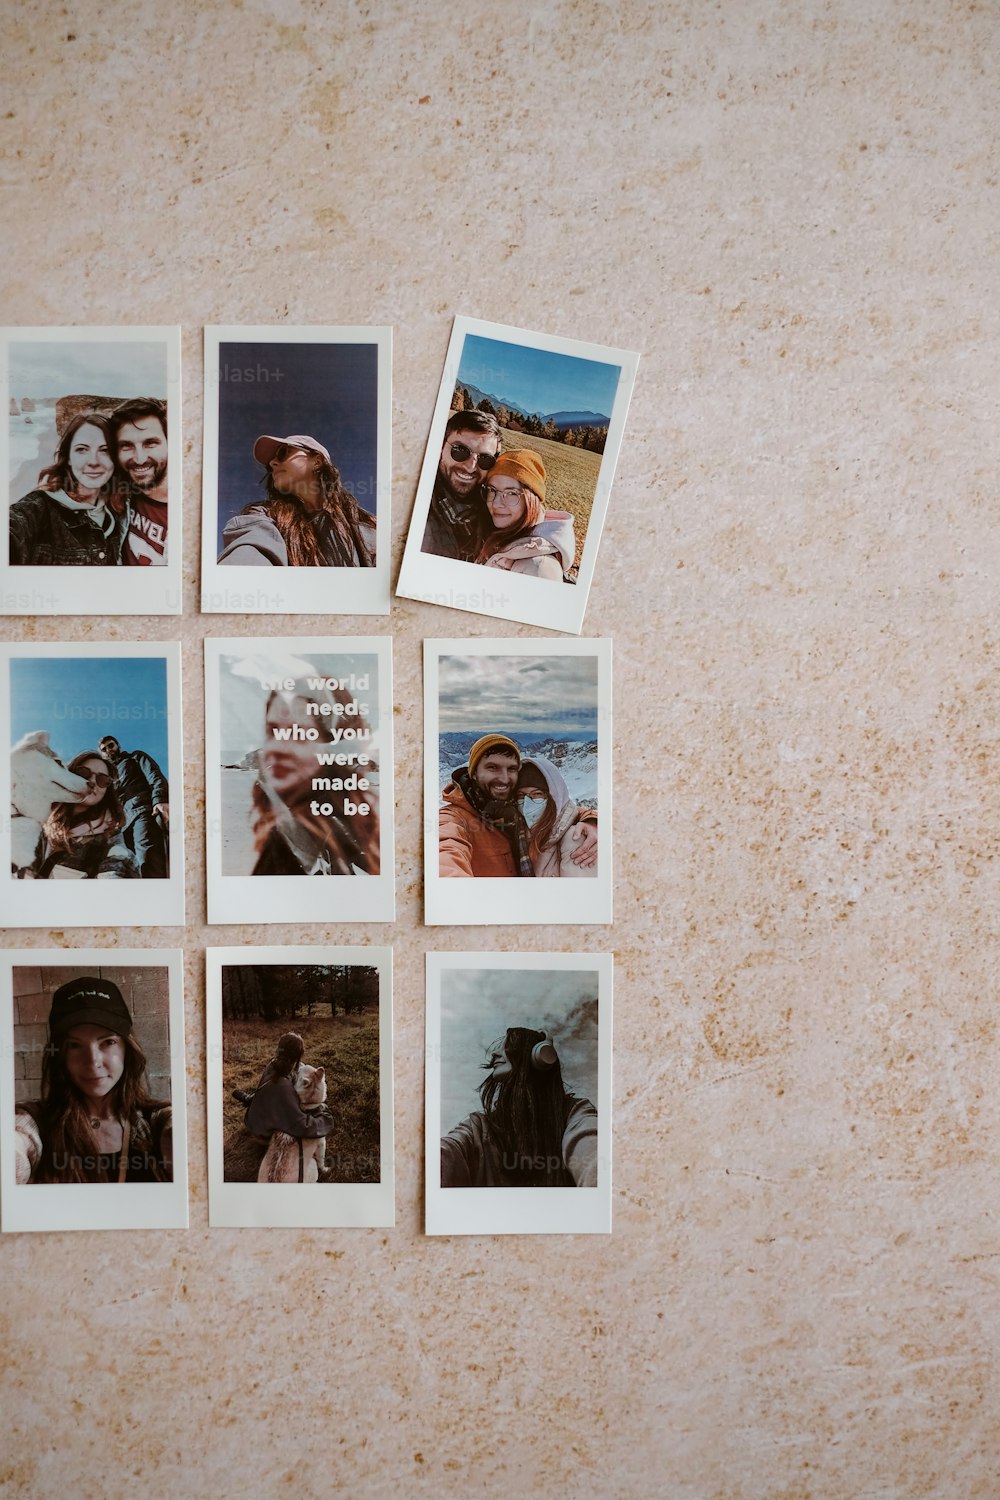 Eine Gruppe von Polaroidbildern eines Mannes und einer Frau